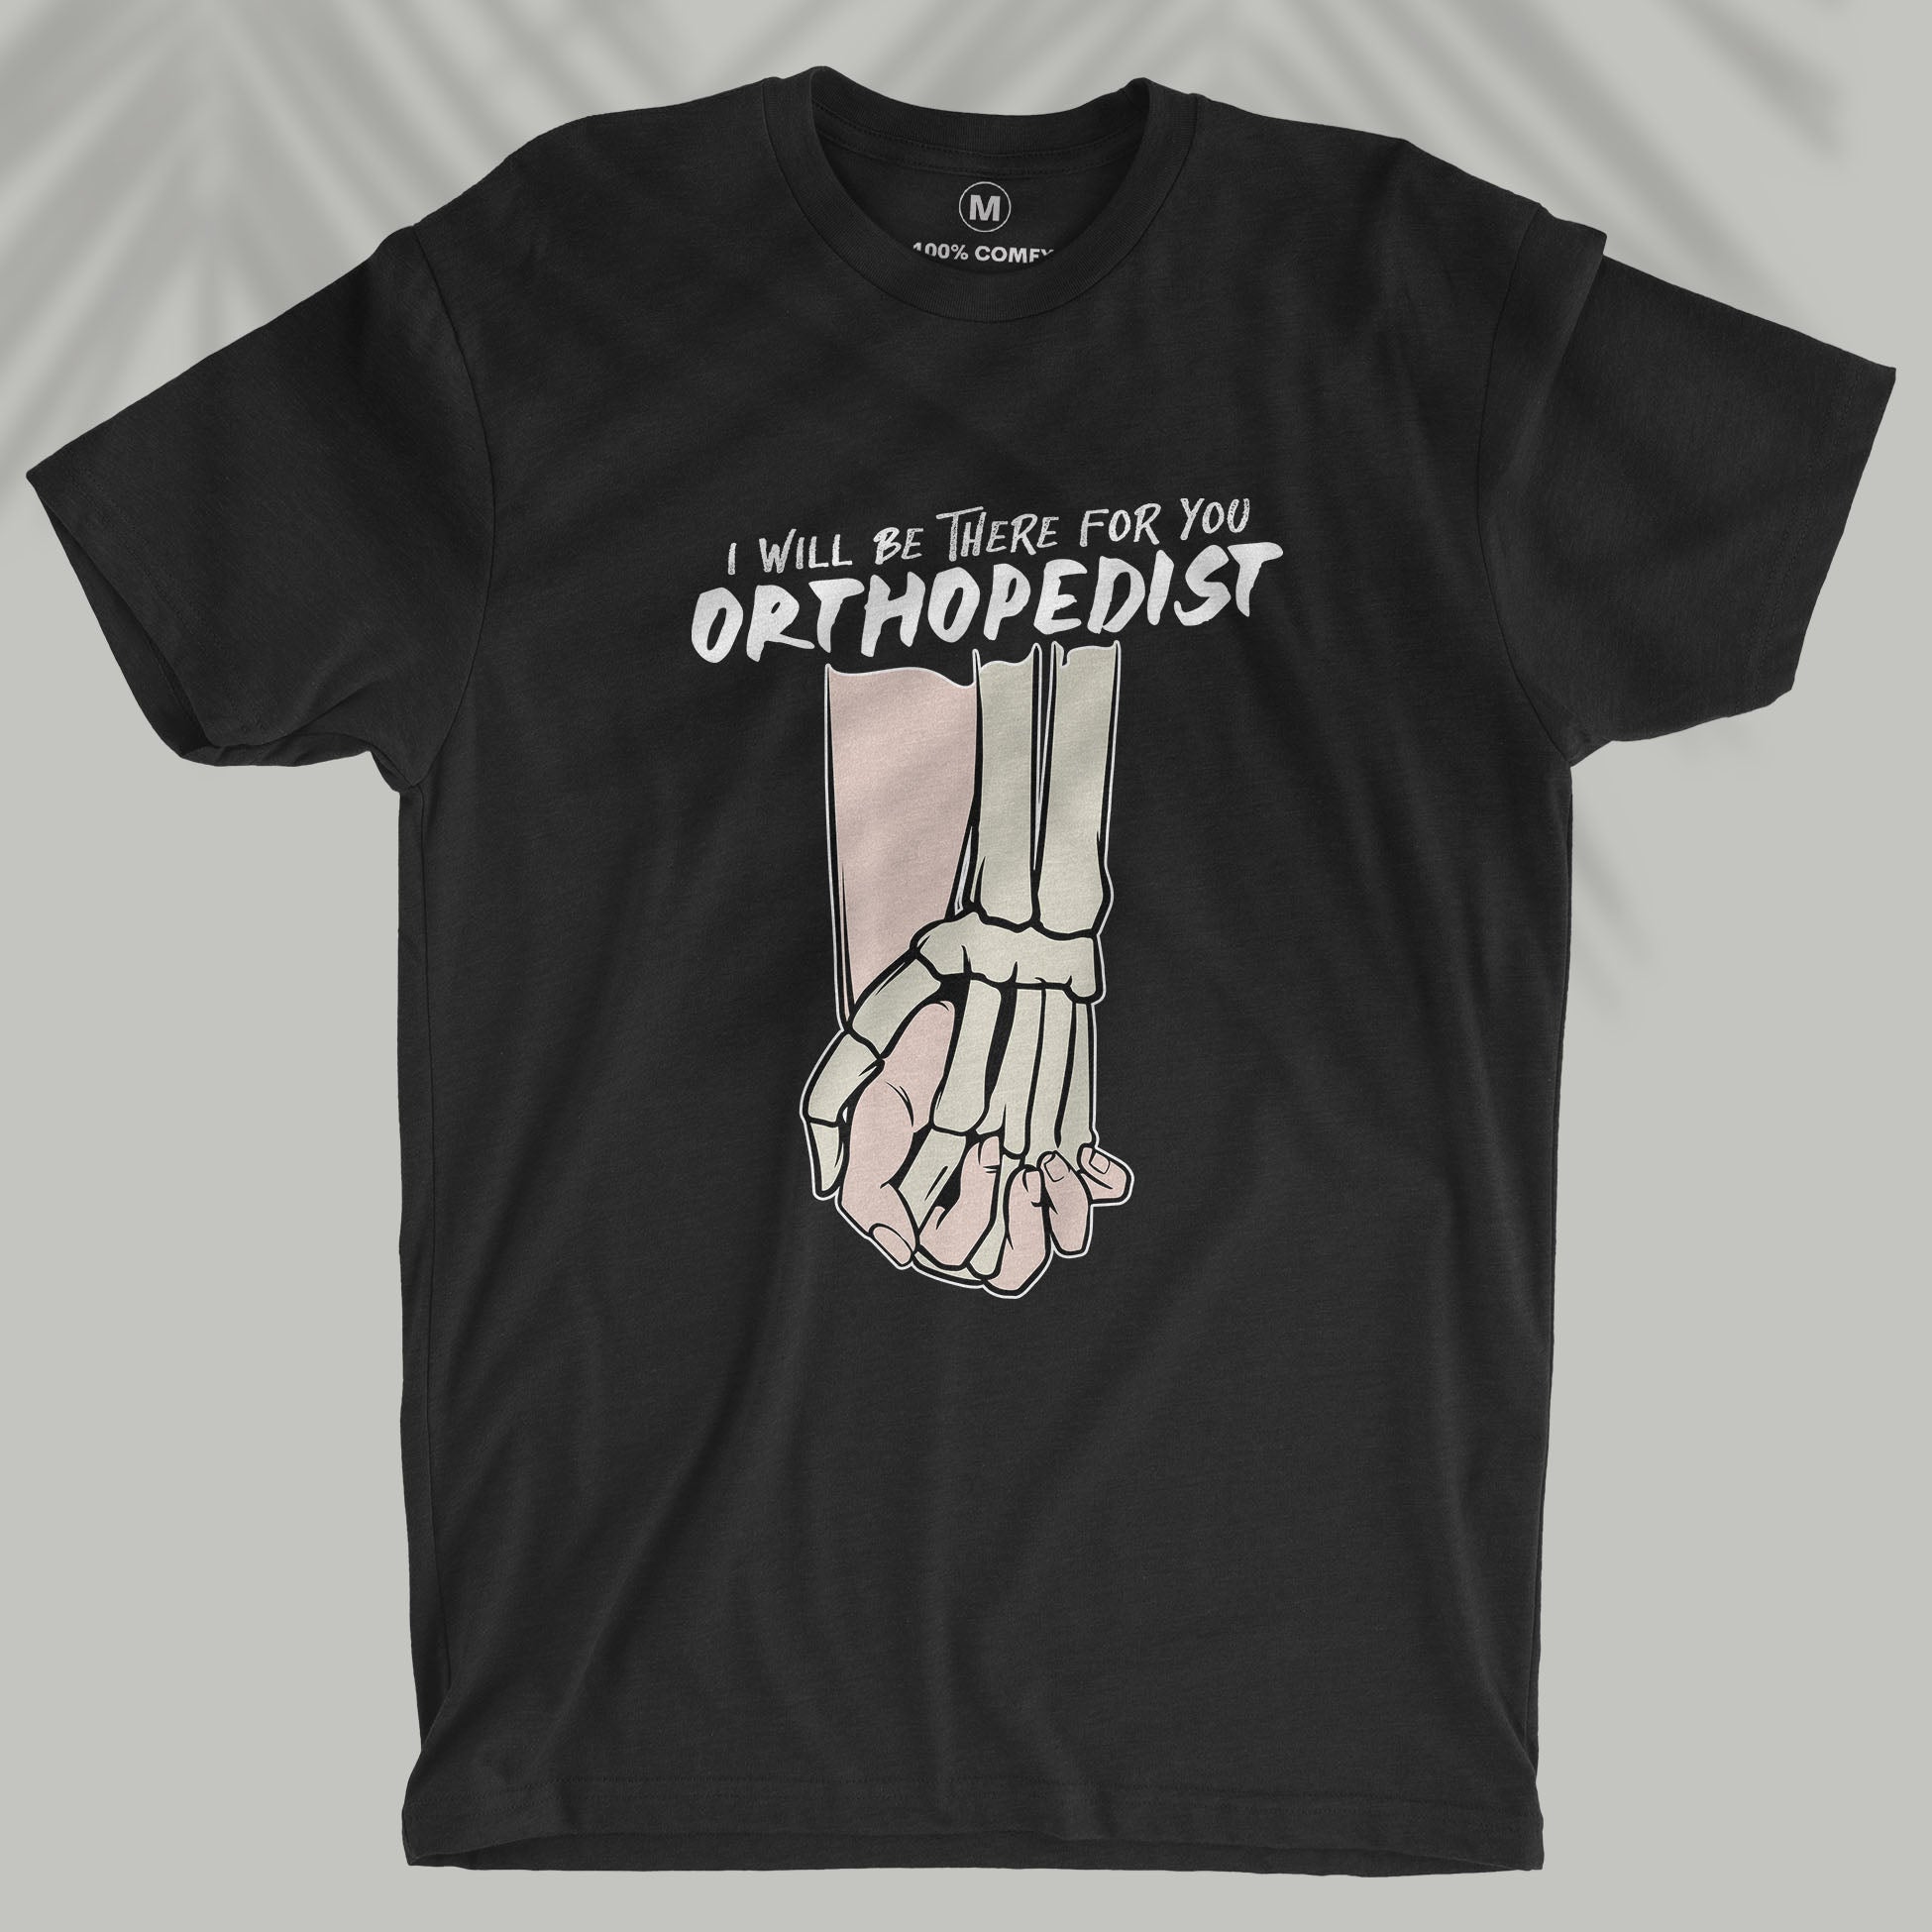 Orthopedist - Unisex T-shirt